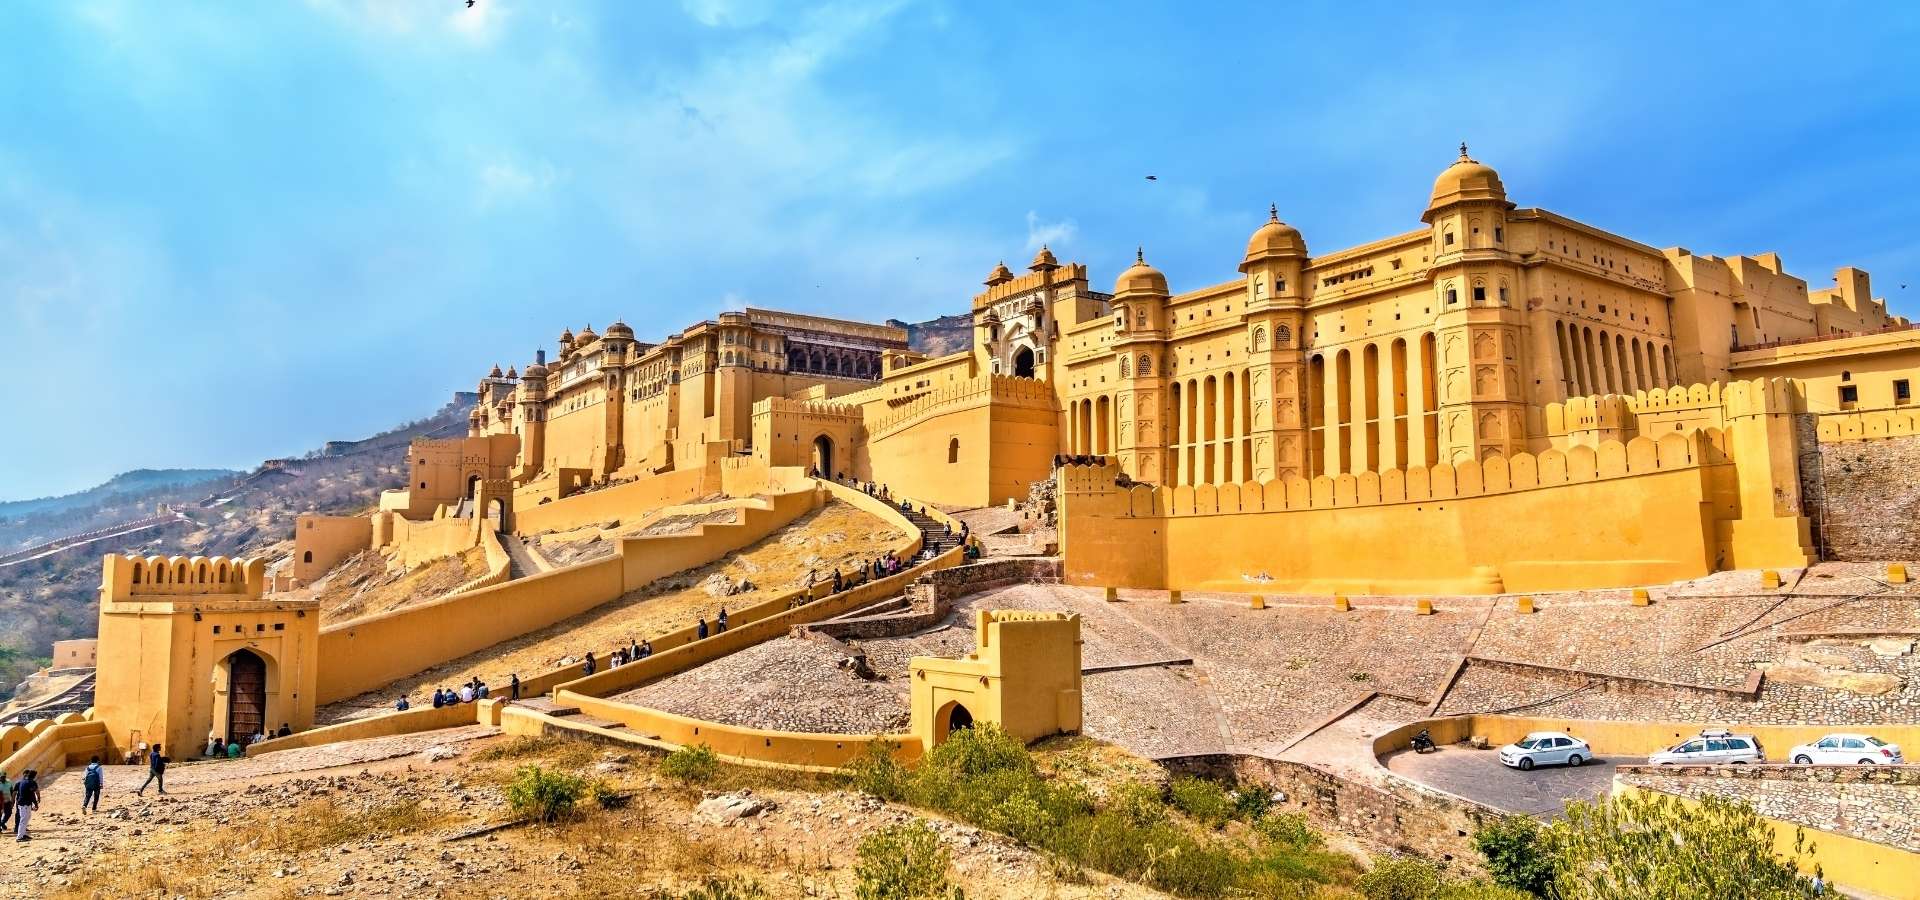 Jaipur Fort - Rajastanin linnoitukset ja palatsit - Intia